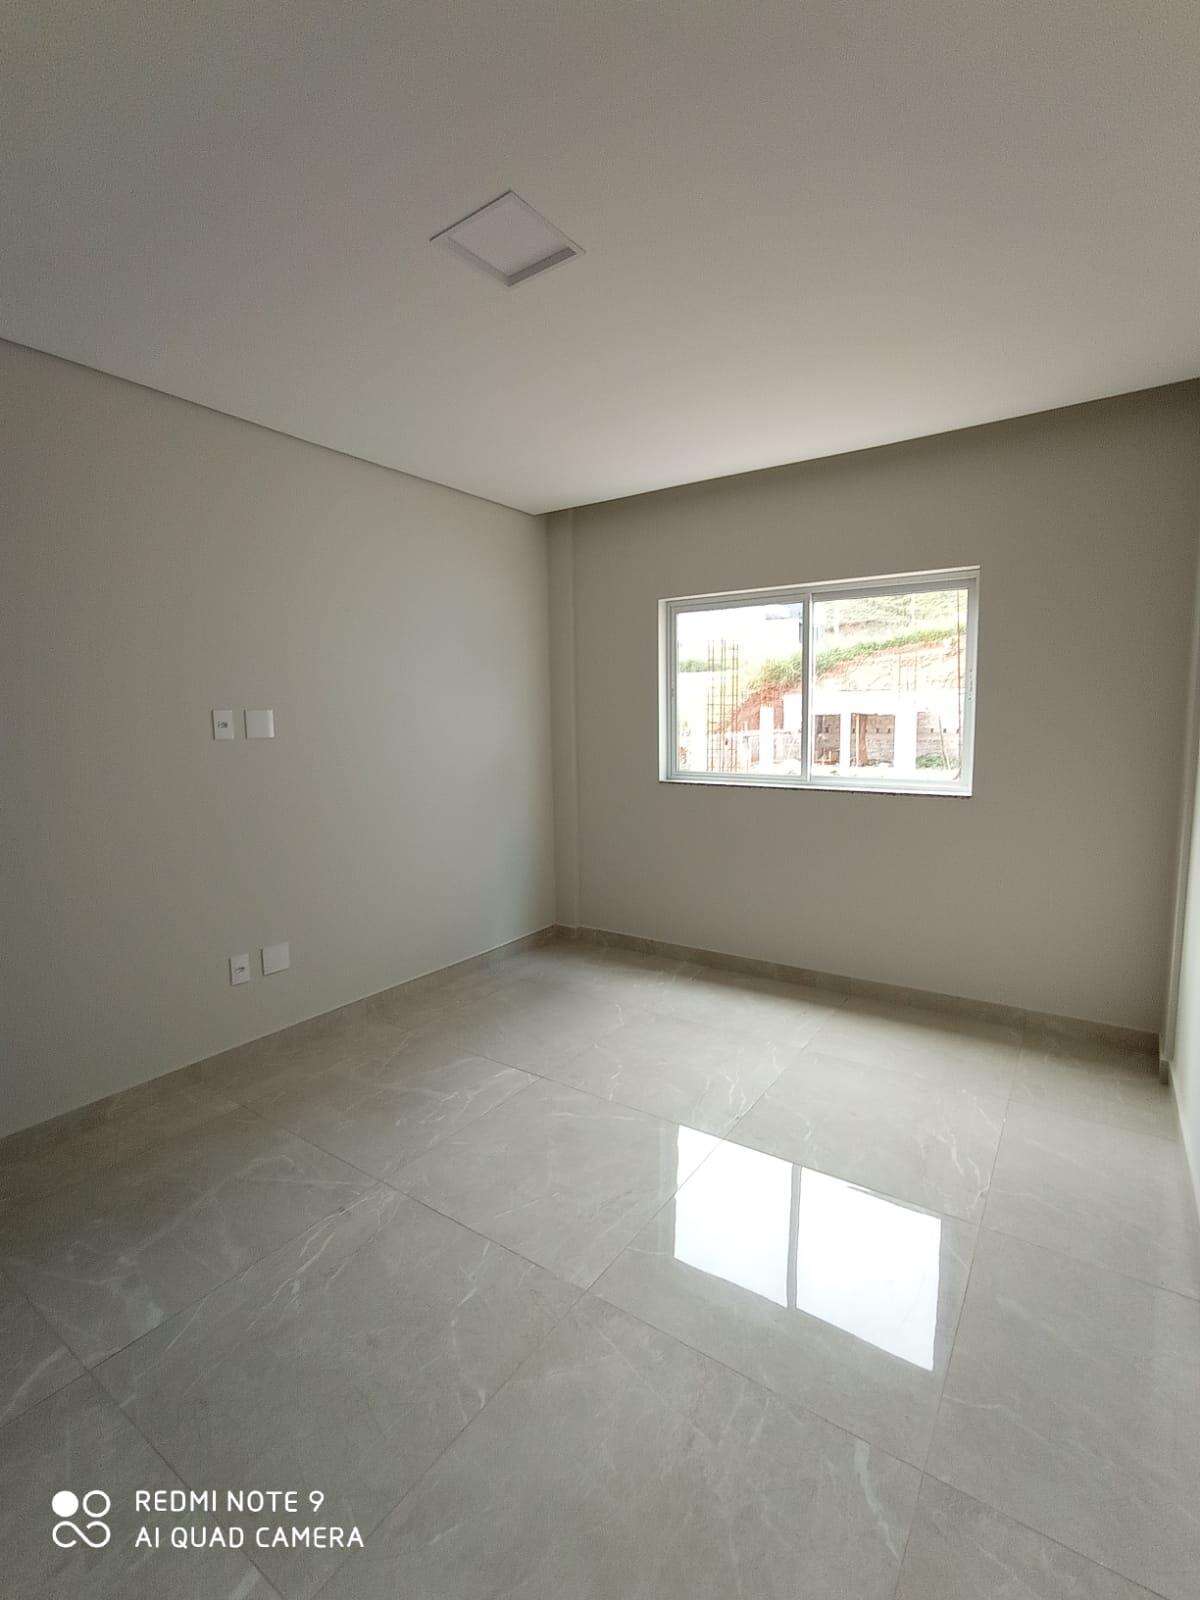 Apartamento 3 quartos para aluguel no Rafael José de Lima: e59acb55-1-whatsapp-image-2023-06-05-at-12.52.02.jpeg